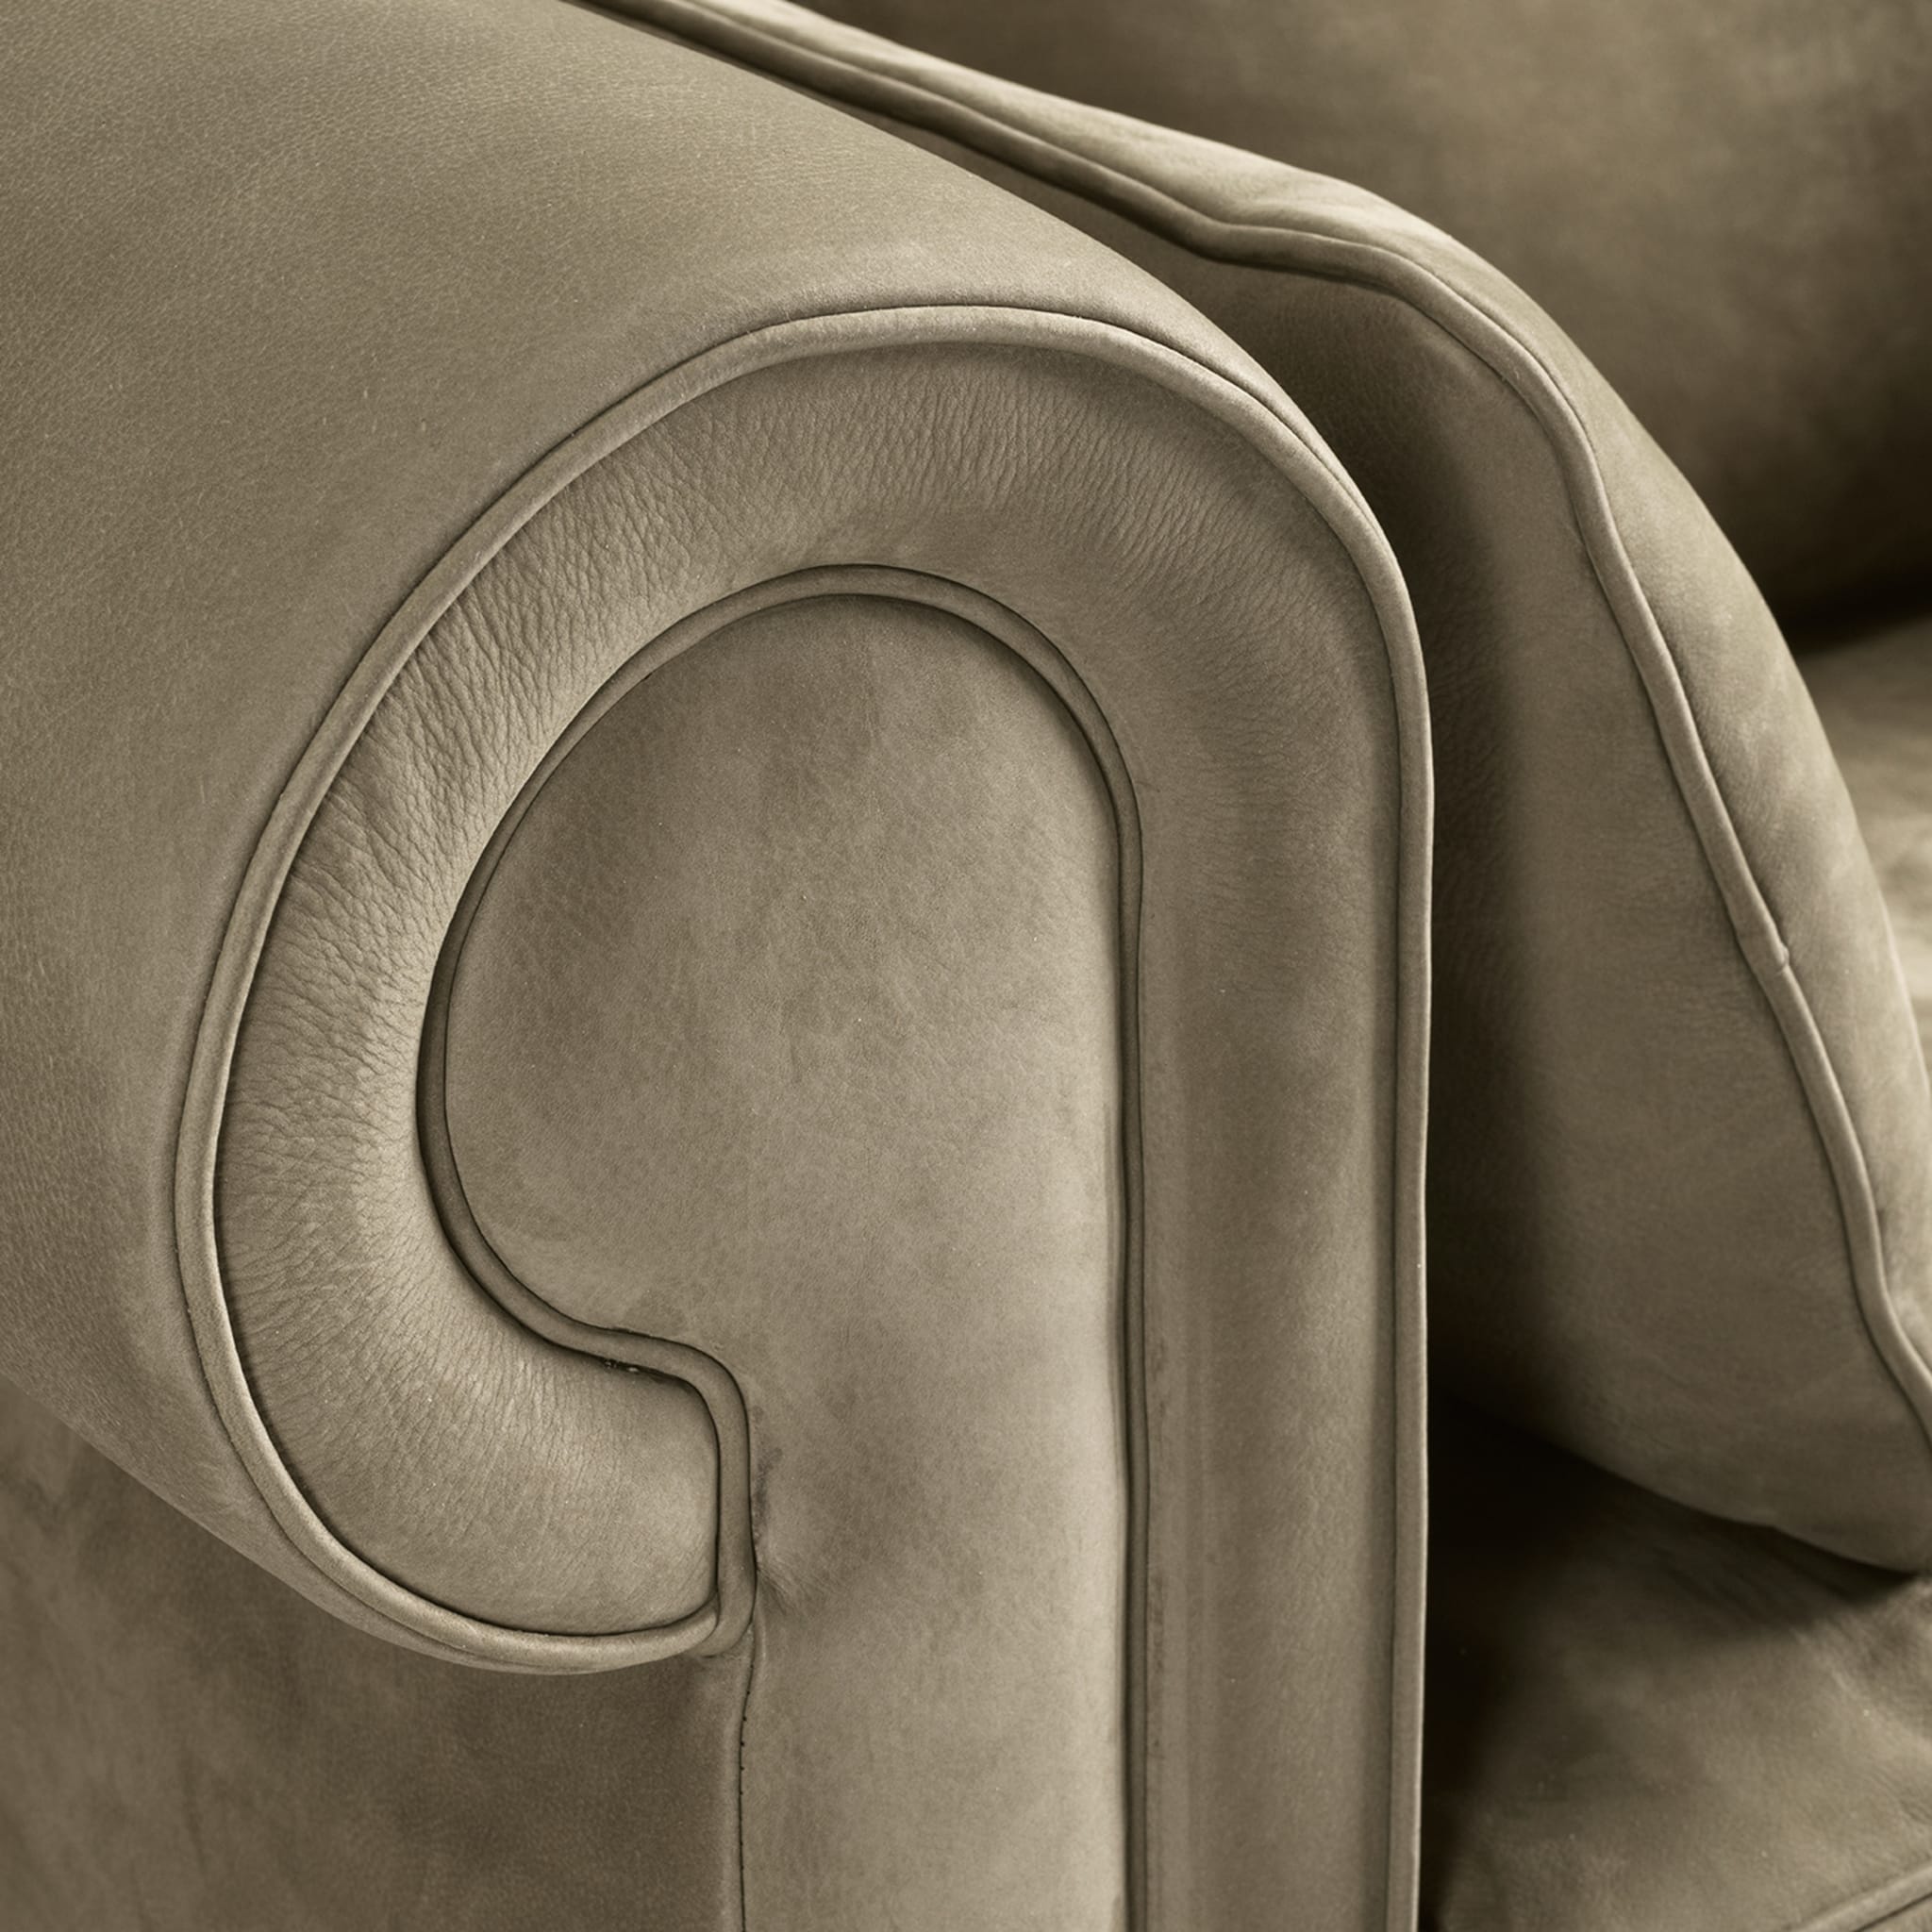 Portofino Gray Sofa by Stefano Giovannoni #2 - Alternative view 3